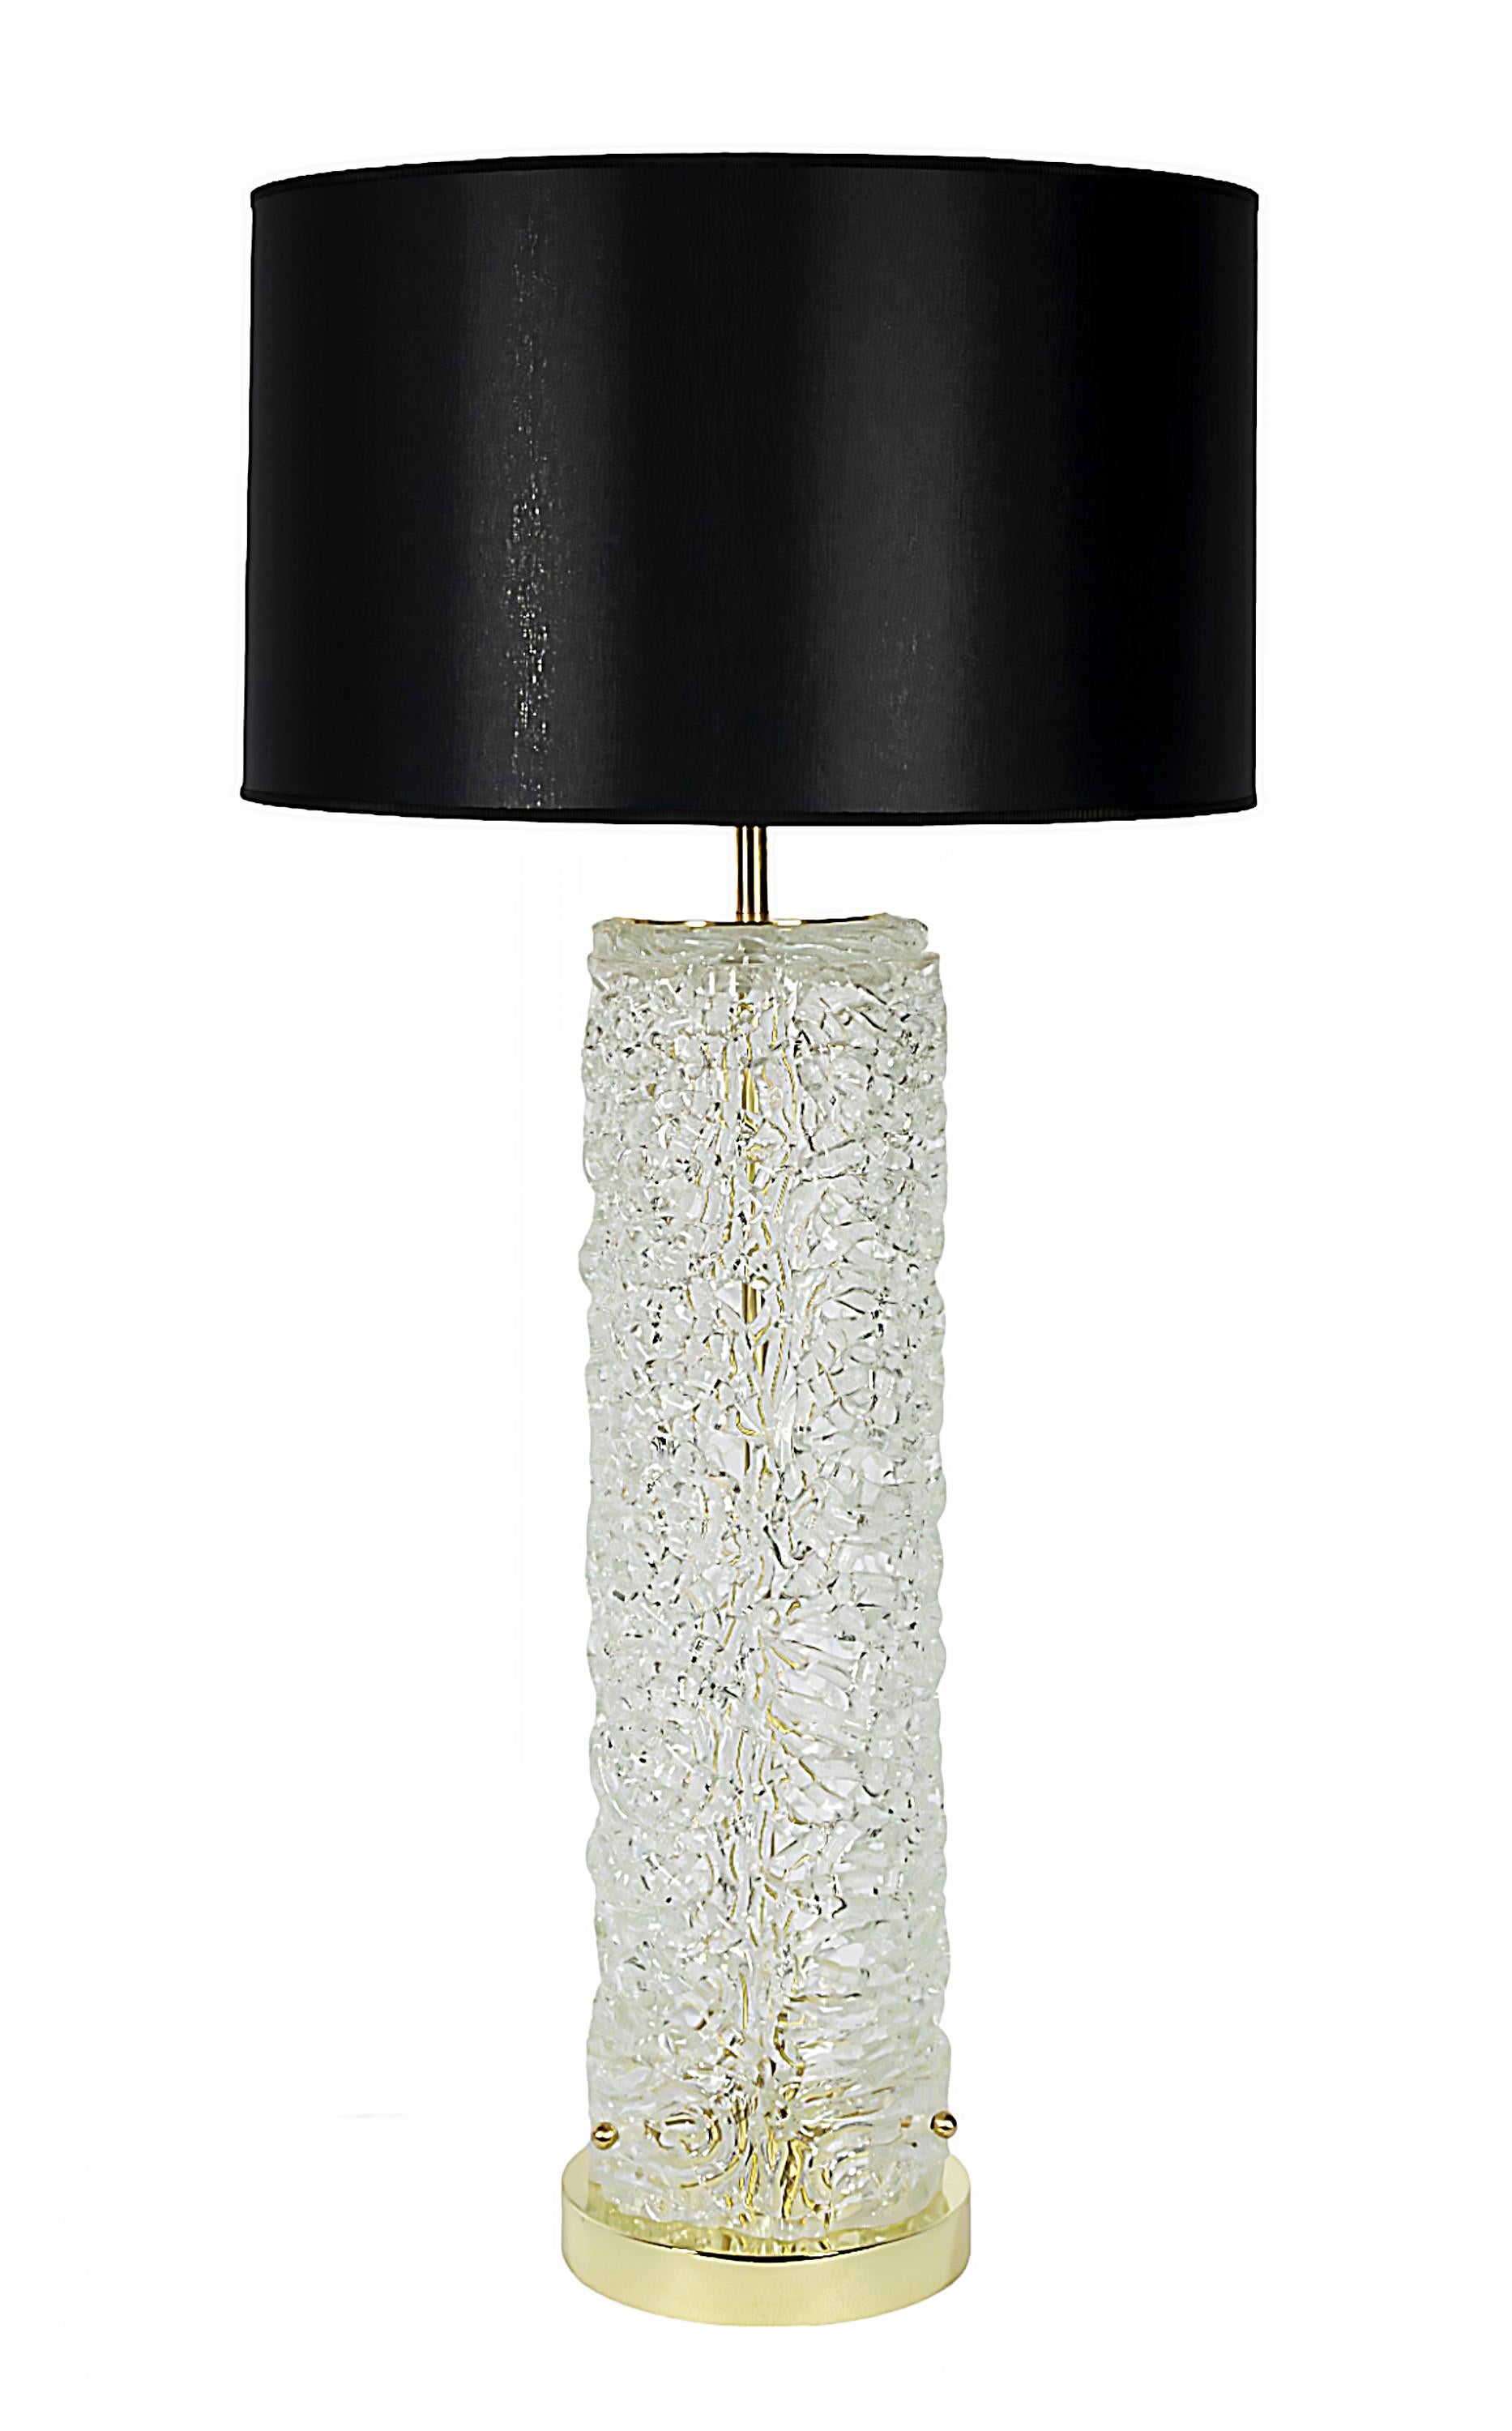 Paire de lampes de table italiennes en verre de Murano transparent, texturé et ajouré.
La base est en laiton rond. 
Les deux lampes sont équipées d'abat-jours en textile satiné noir neufs.
Dimensions : 
Hauteur 91 cm (abat-jour inclus), hauteur de